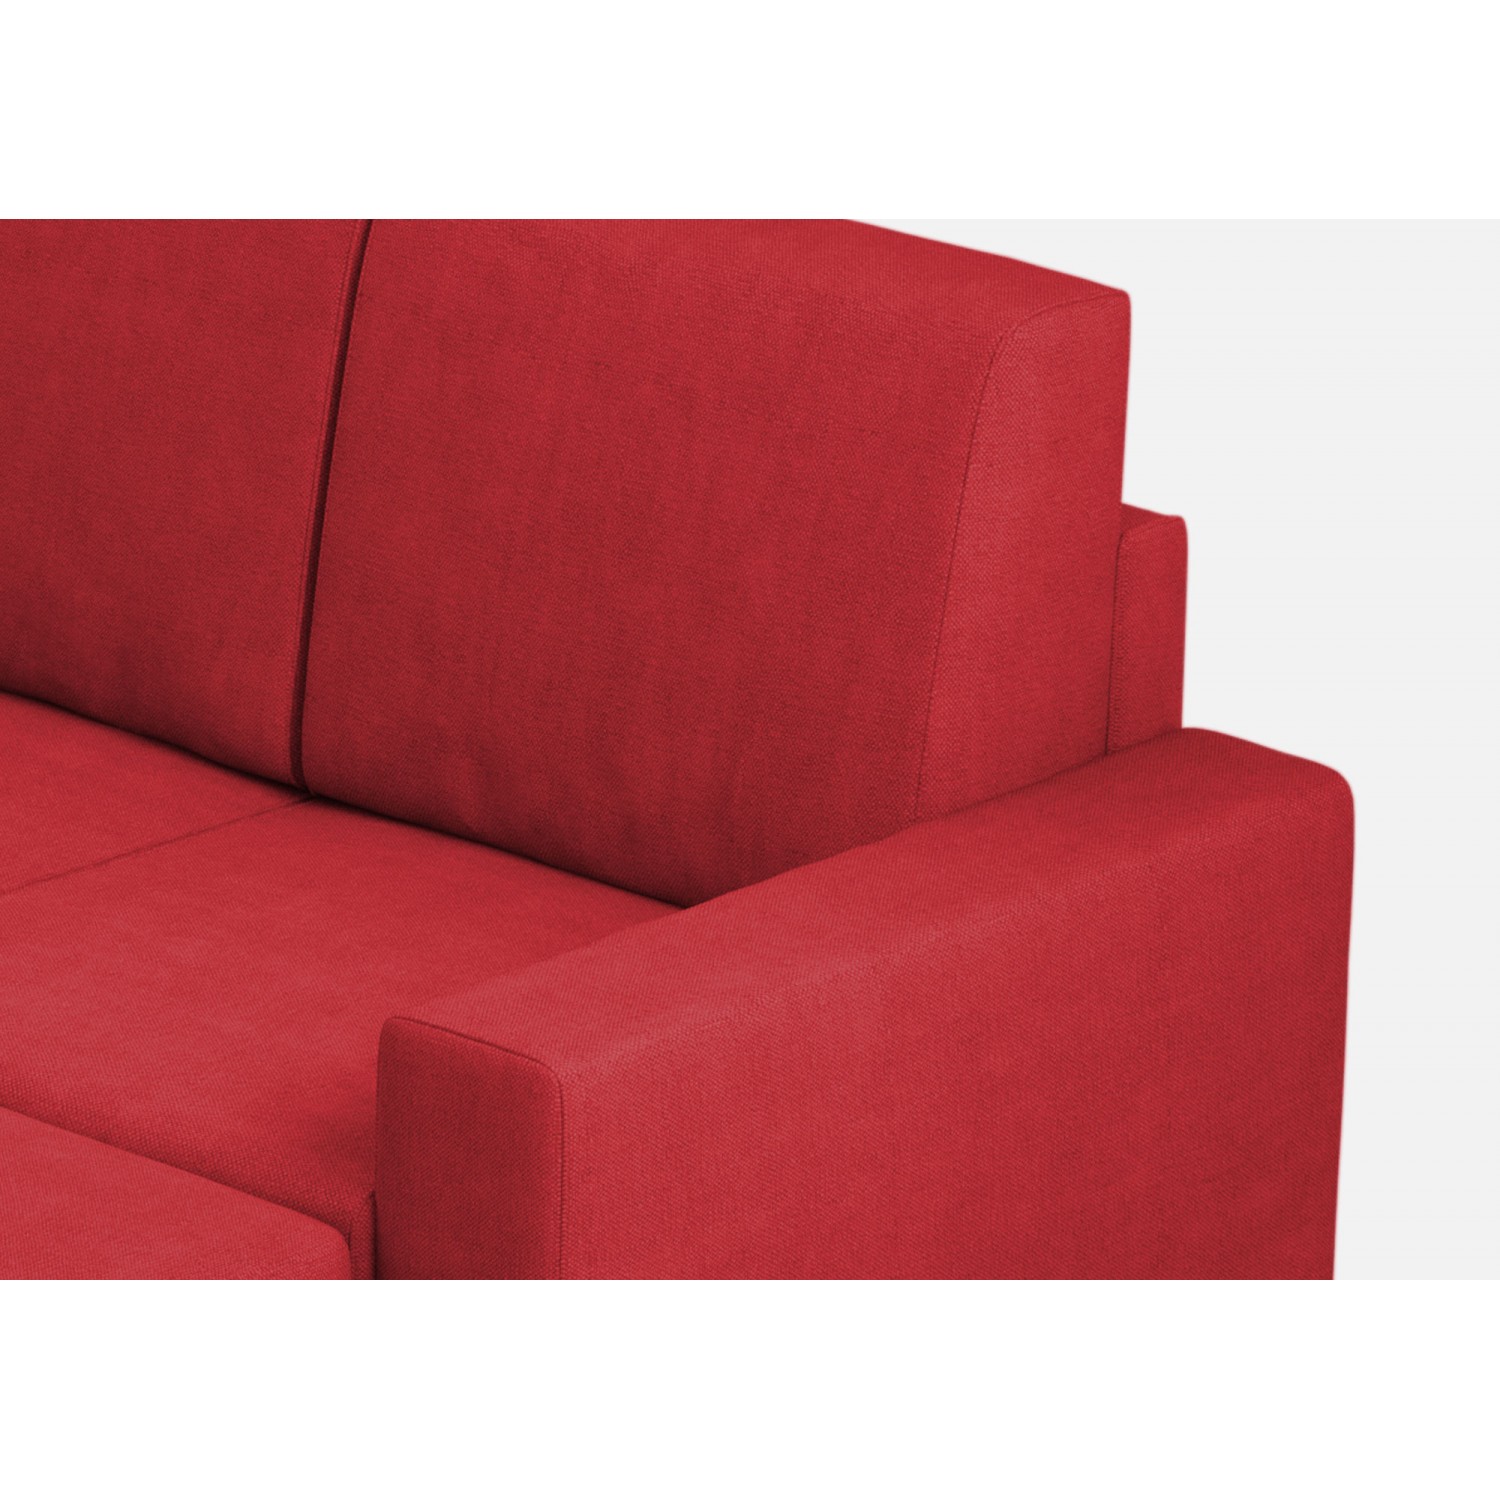 Ityhome Divano Sakar 2 posti (due sedute da 60cm) + pouf misure esterne L.148 P.155 colore rosso